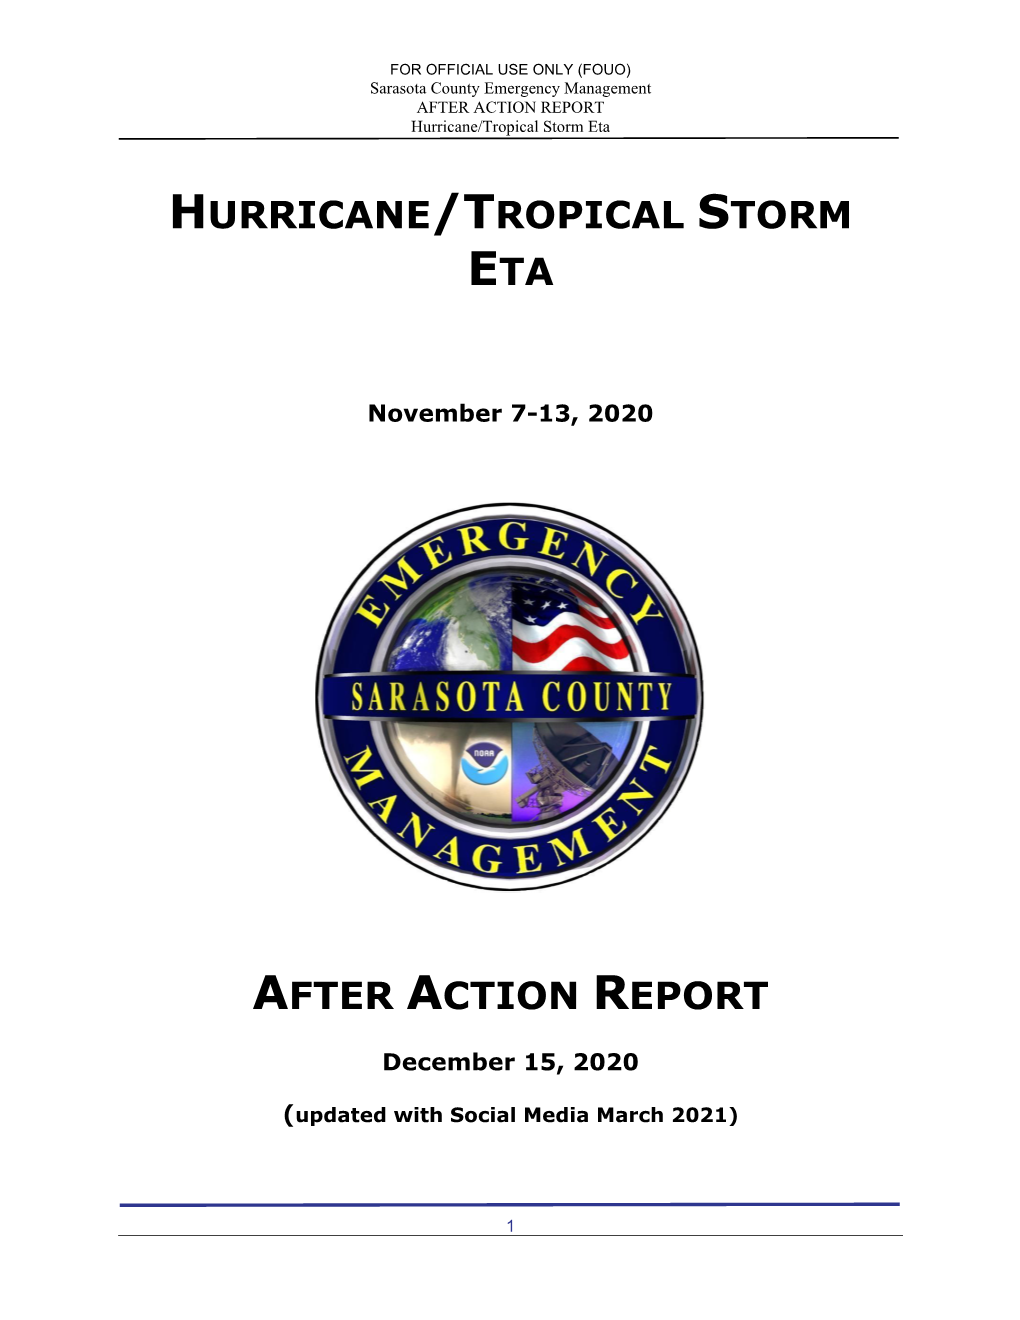 Hurricane/Tropical Storm Eta